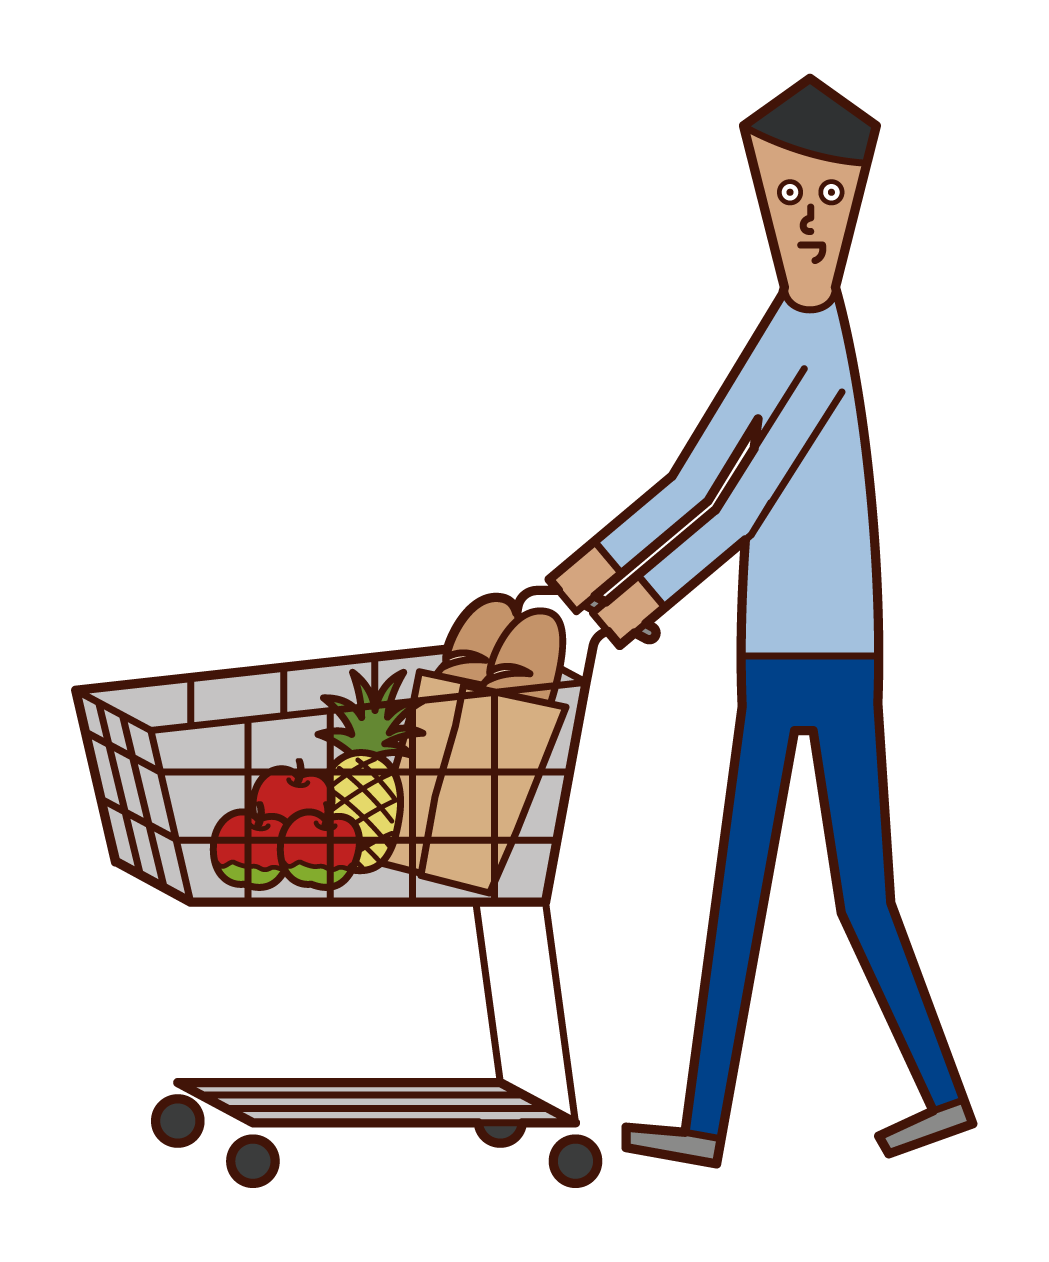 슈퍼마켓에서 쇼핑하는 사람 (남성)의 그림